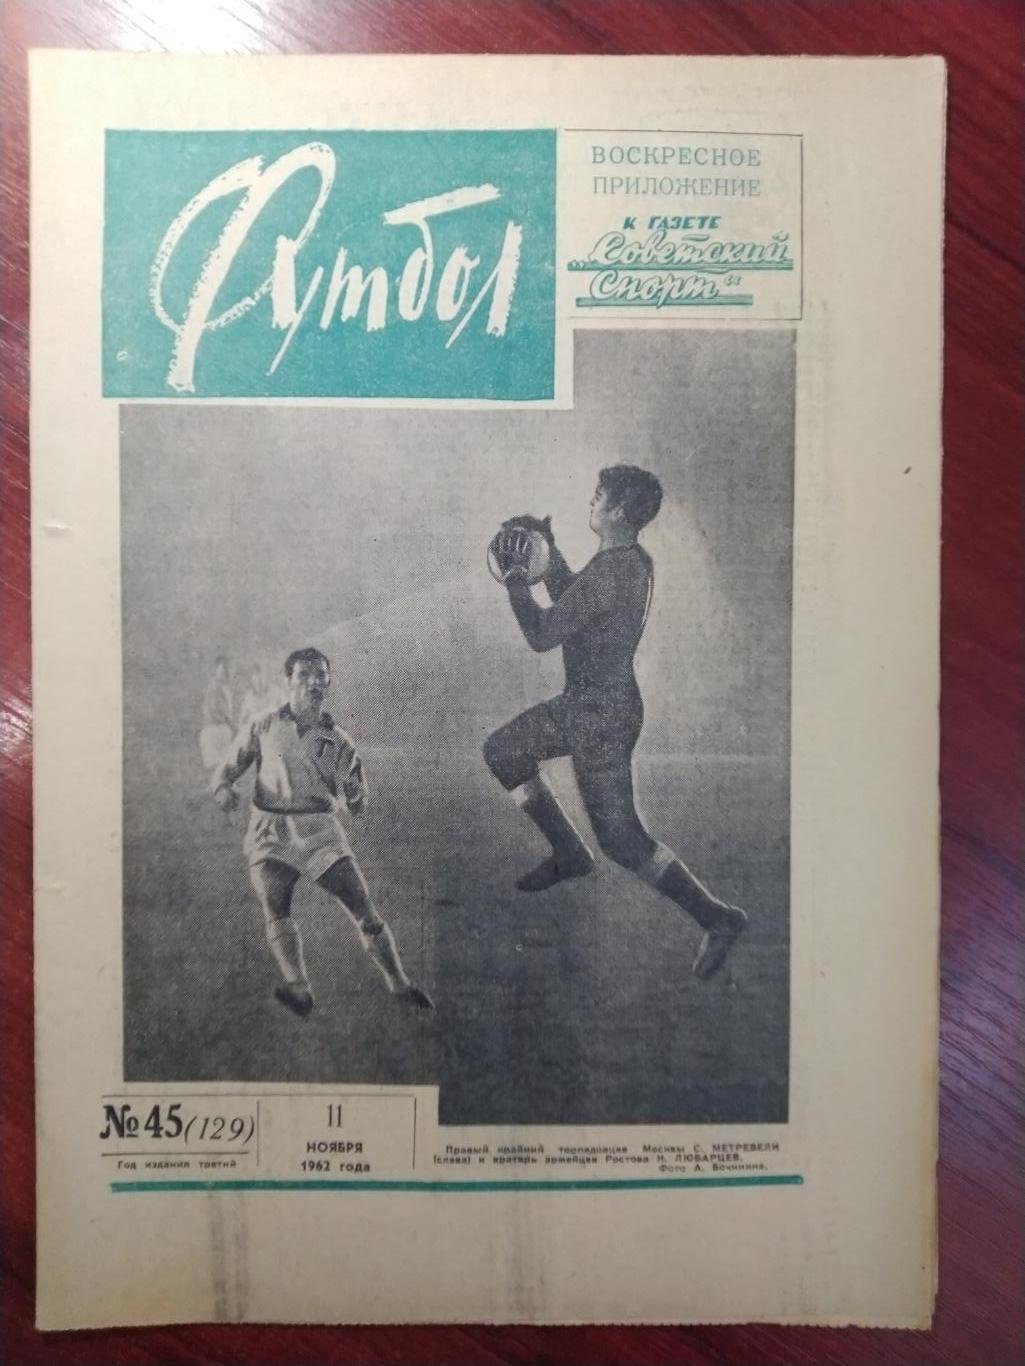 Еженедельник Футбол 1962 №45 Издательство Московская правда